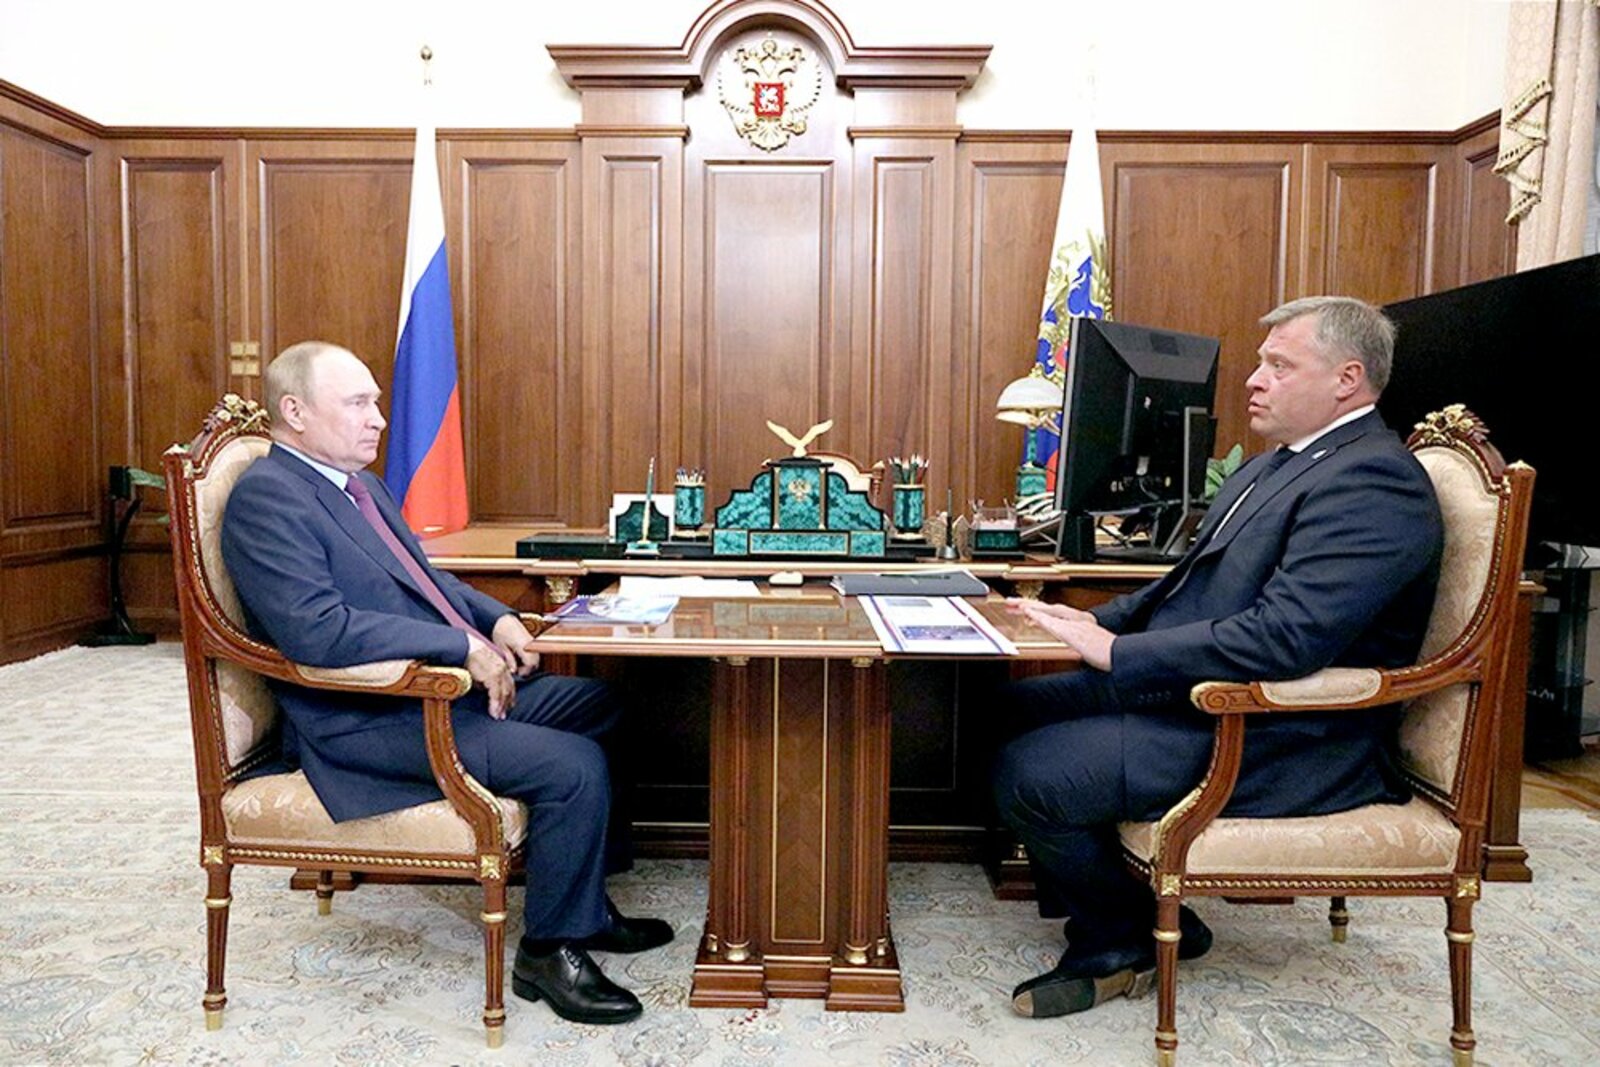 Путин обсудил с главой Астраханской области расселение аварийного жилья и вопросы АПК